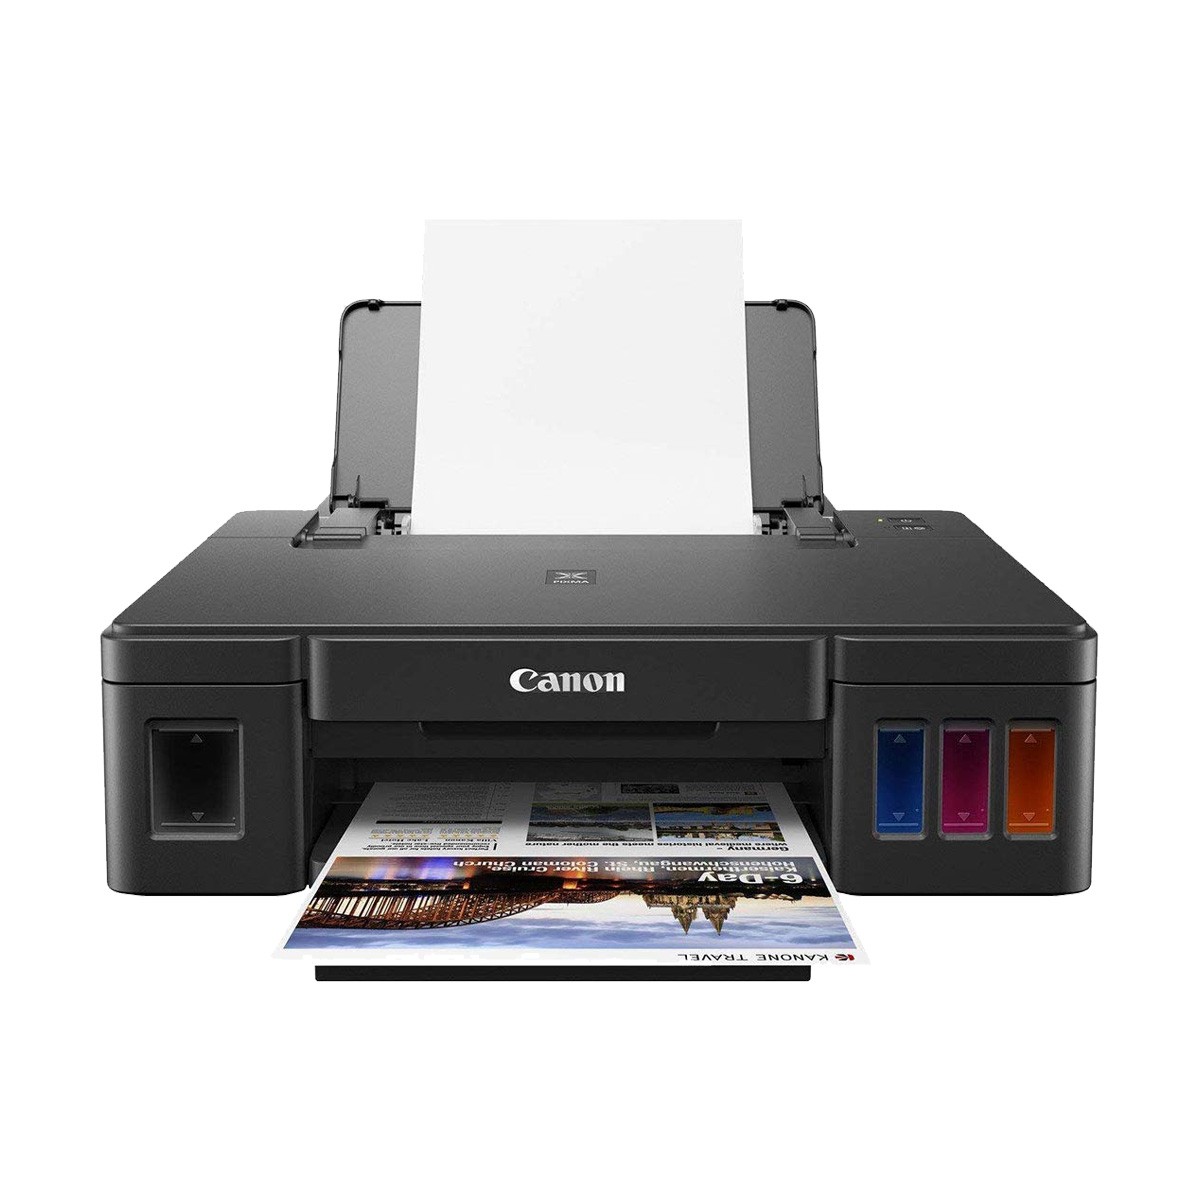 Canon G-1010 Color Printer